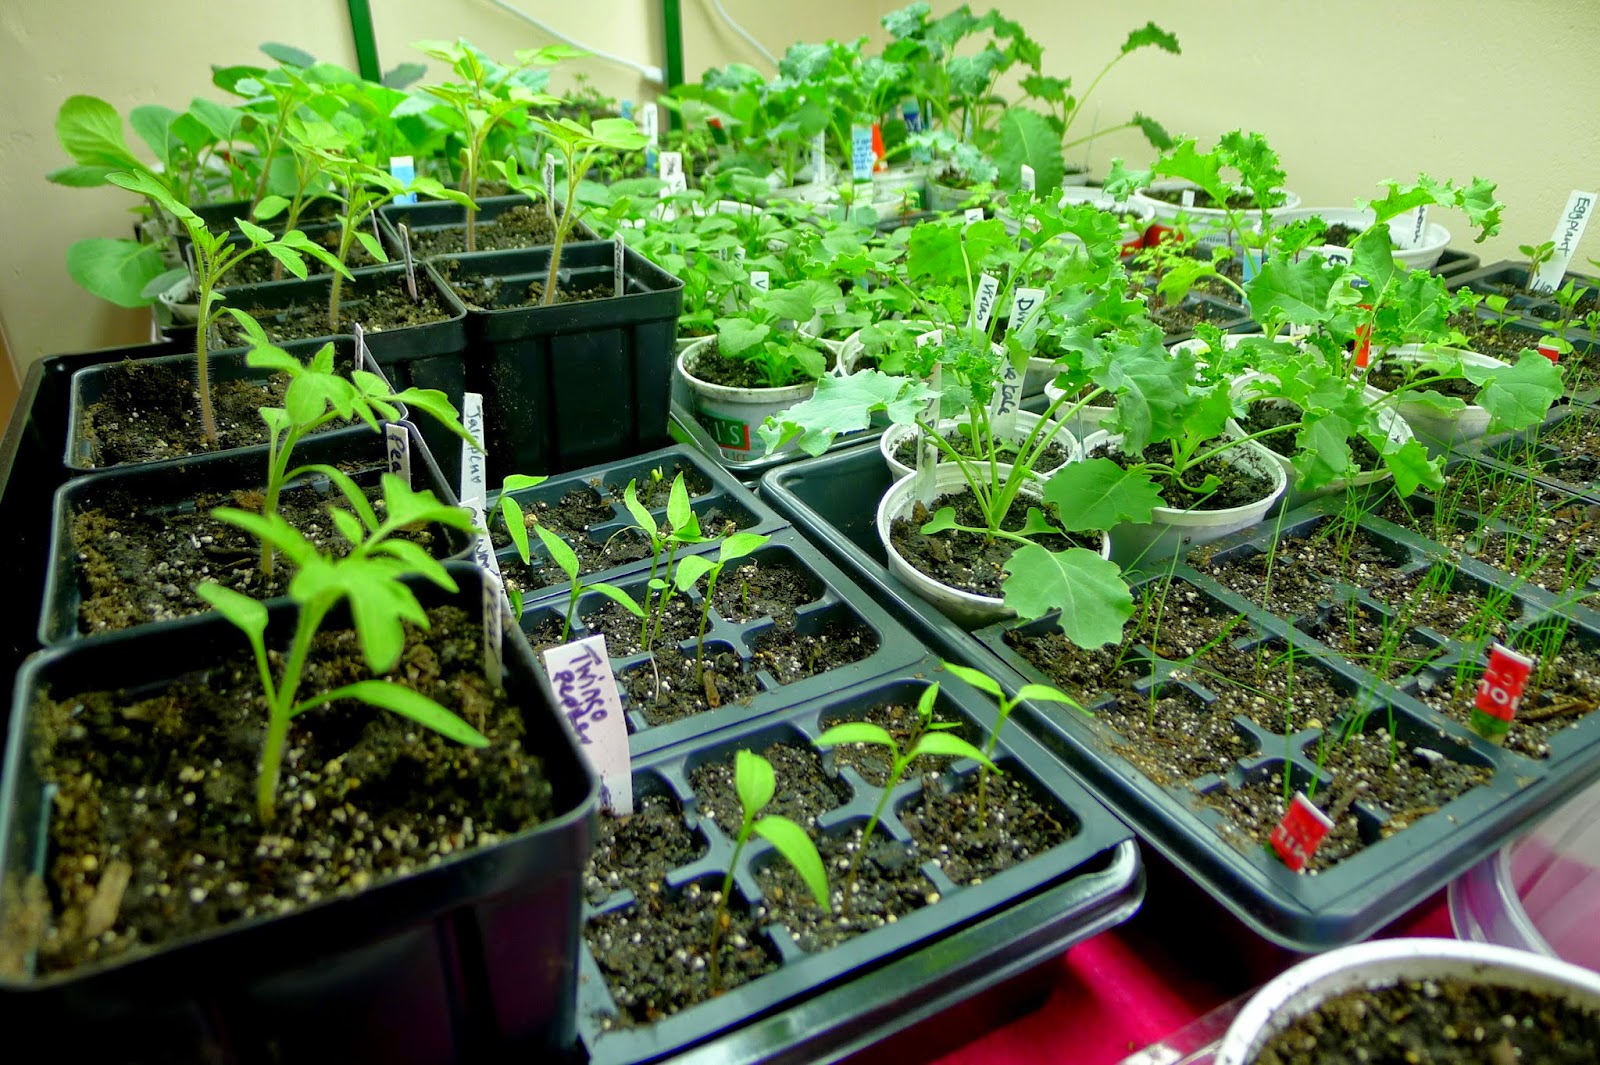 Seedlings under grow lights